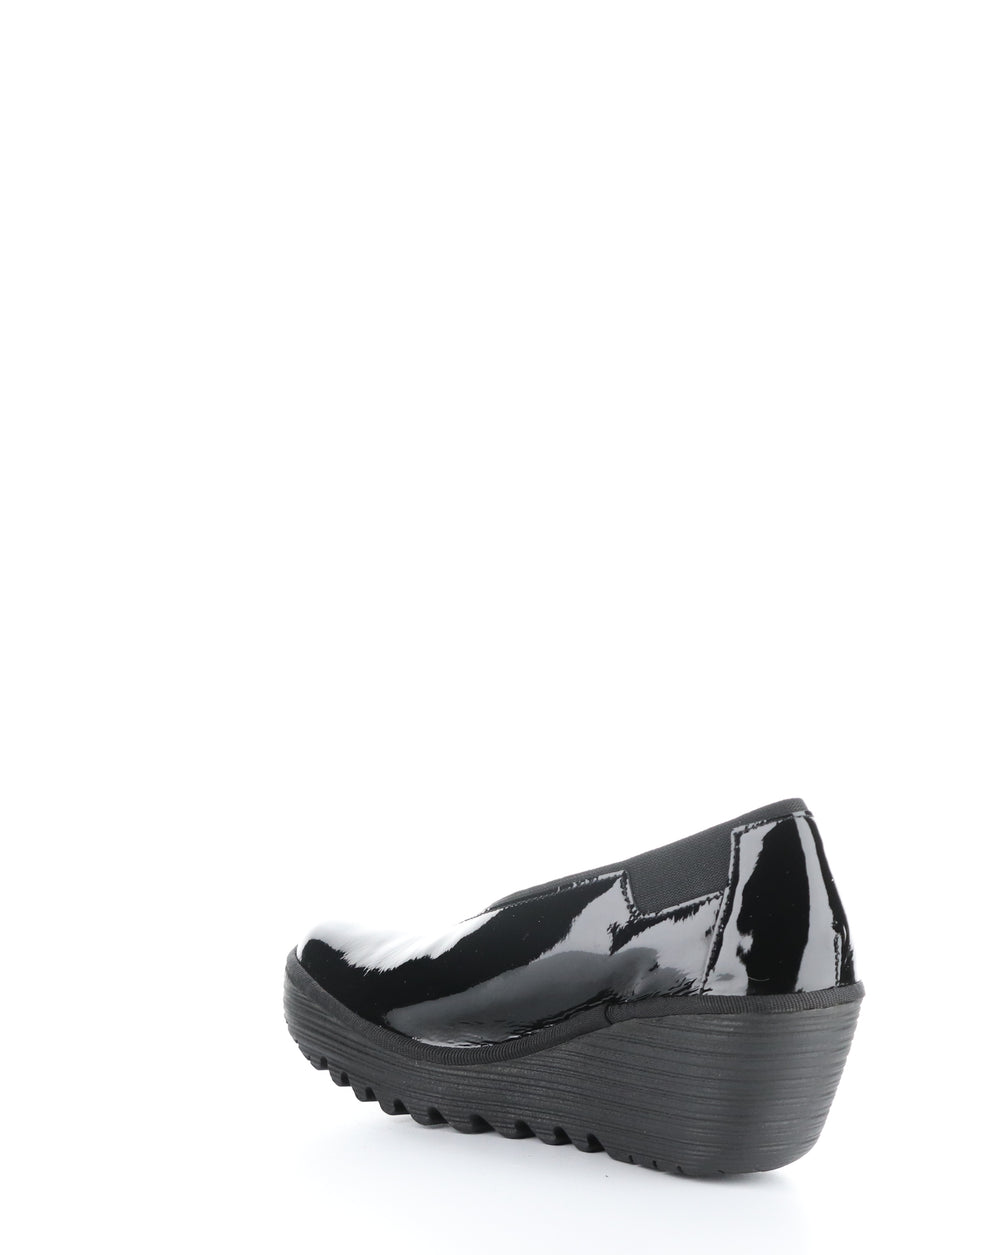 YOZA438FLY 011 BLACK Elasticated Shoes